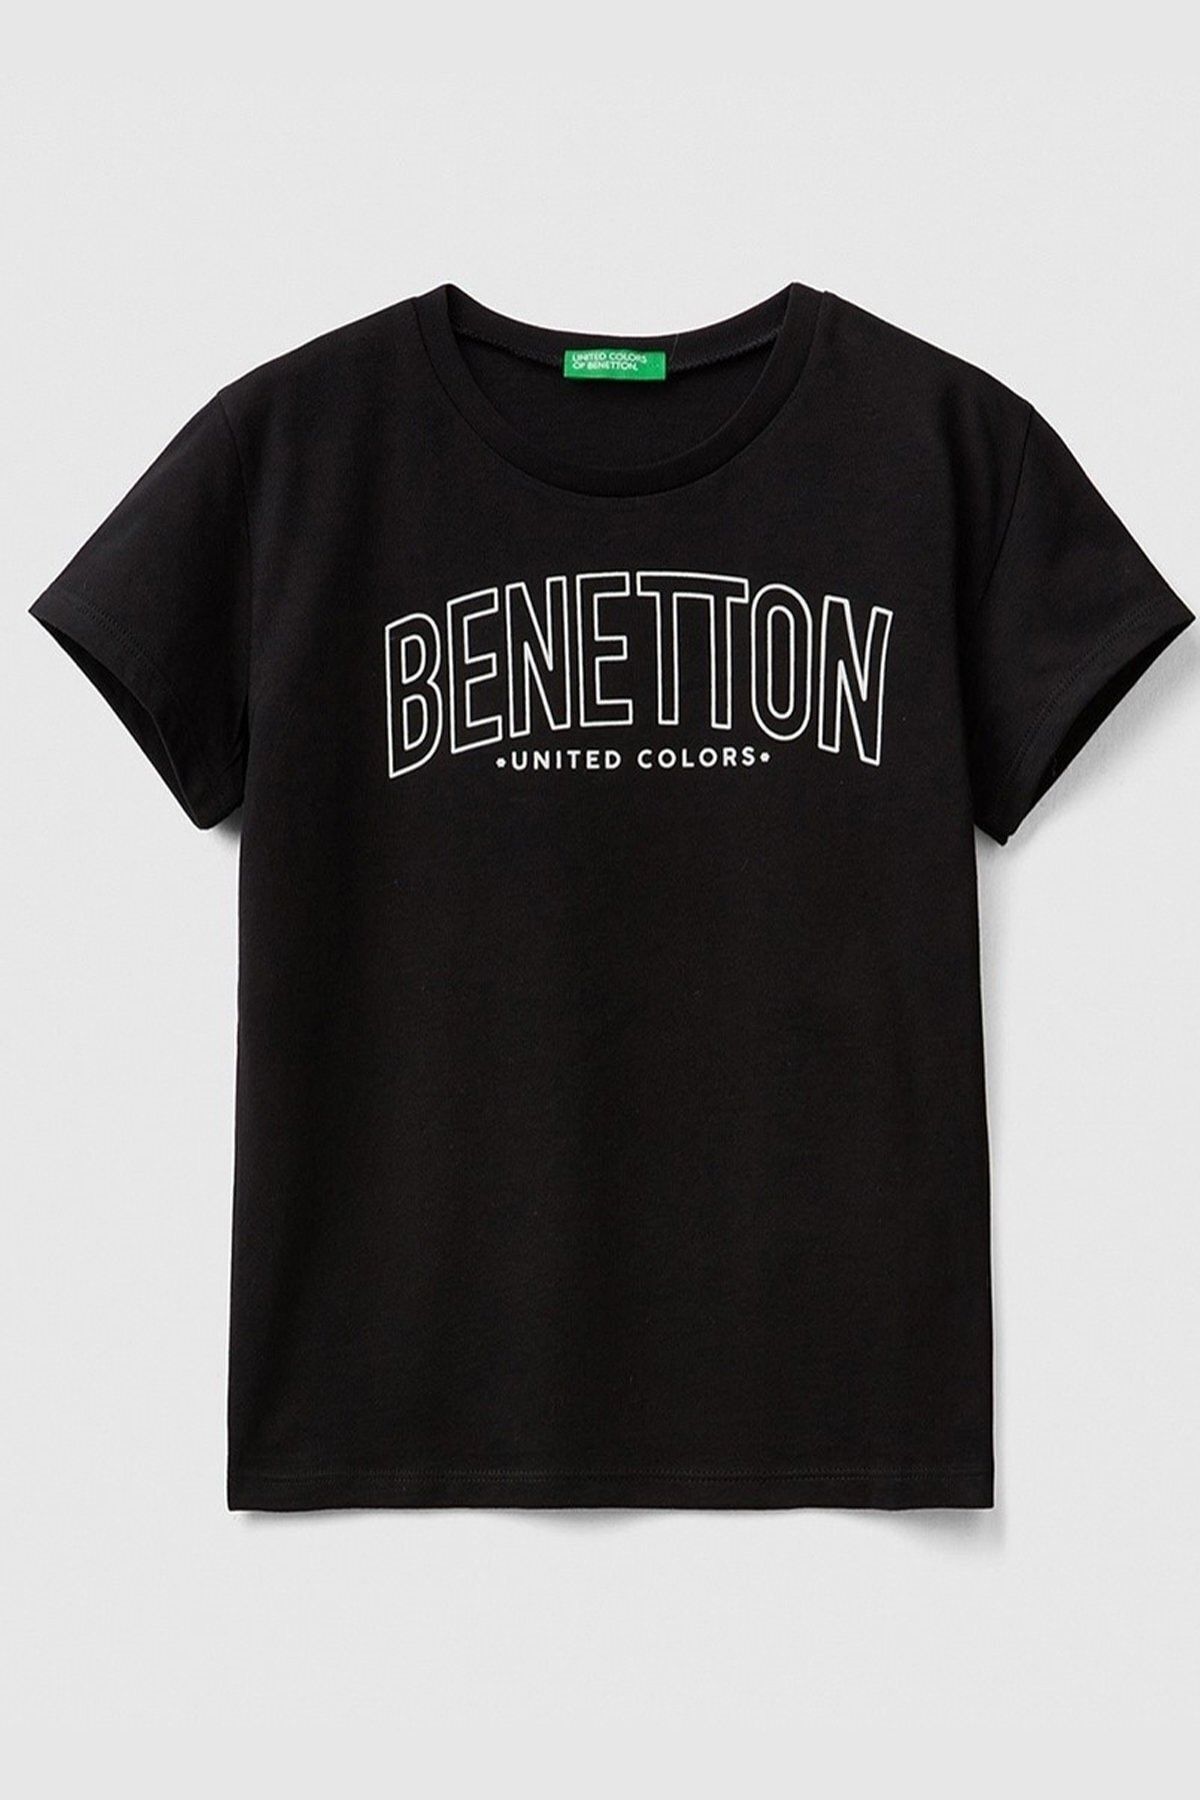 Benetton Kız Çocuk Baskılı Logolu Tişört